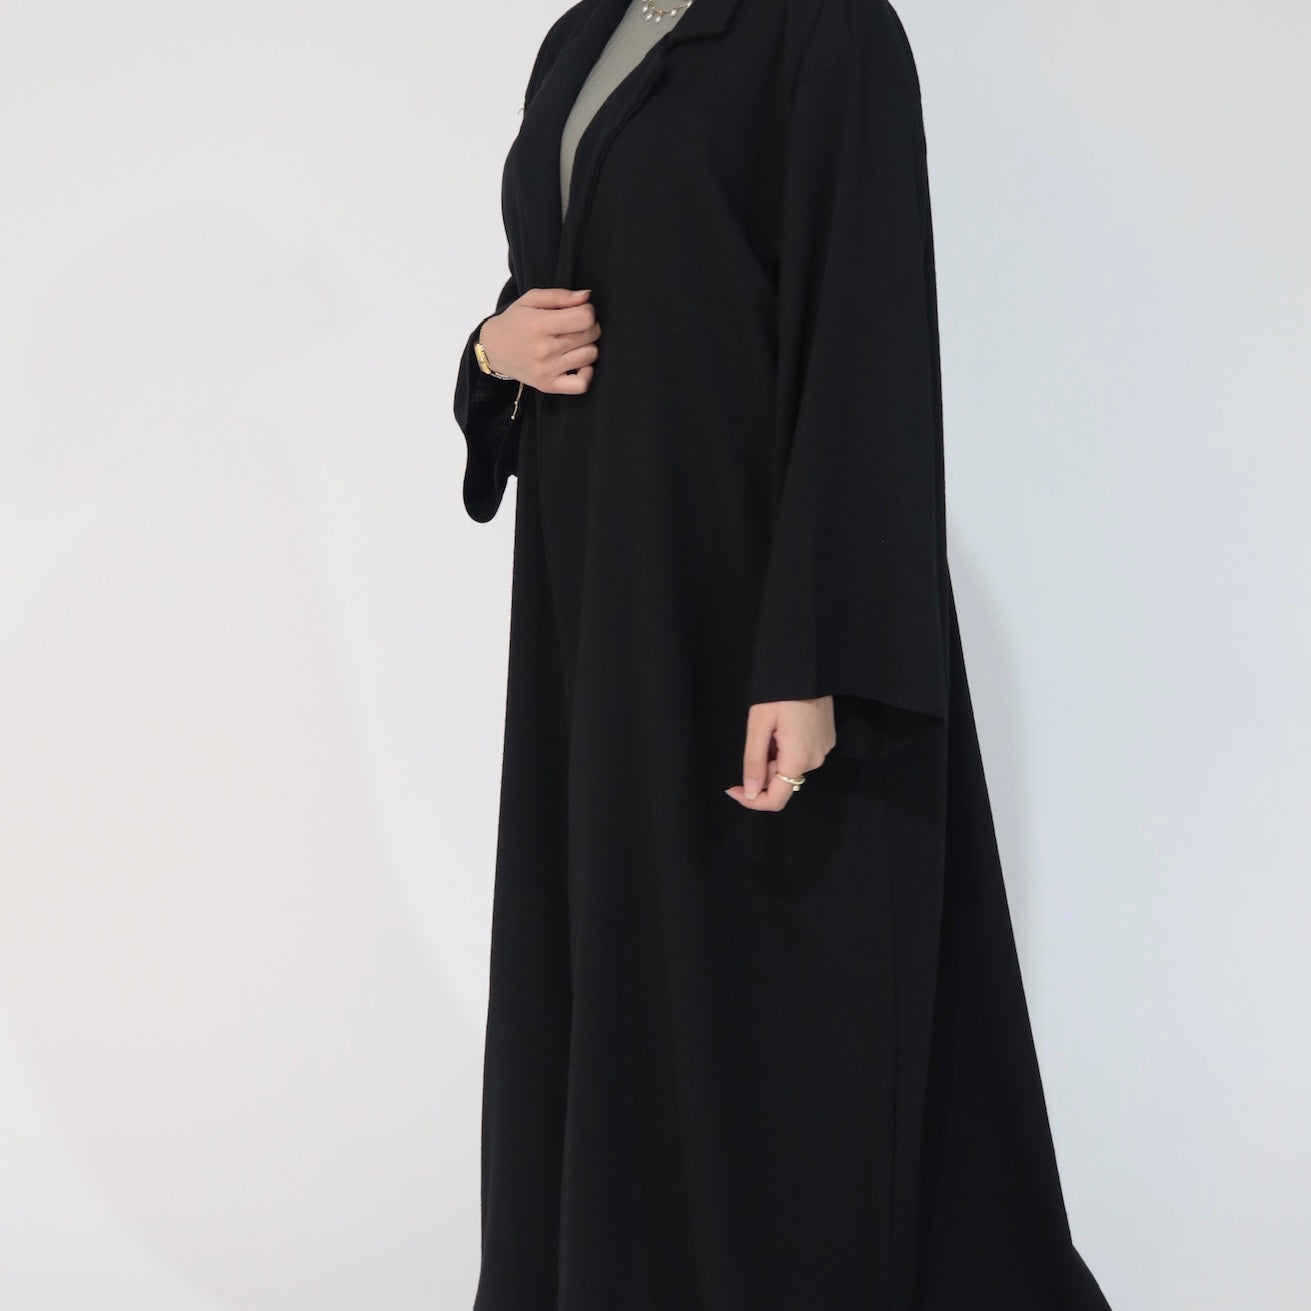 Collared Coat: Denim black